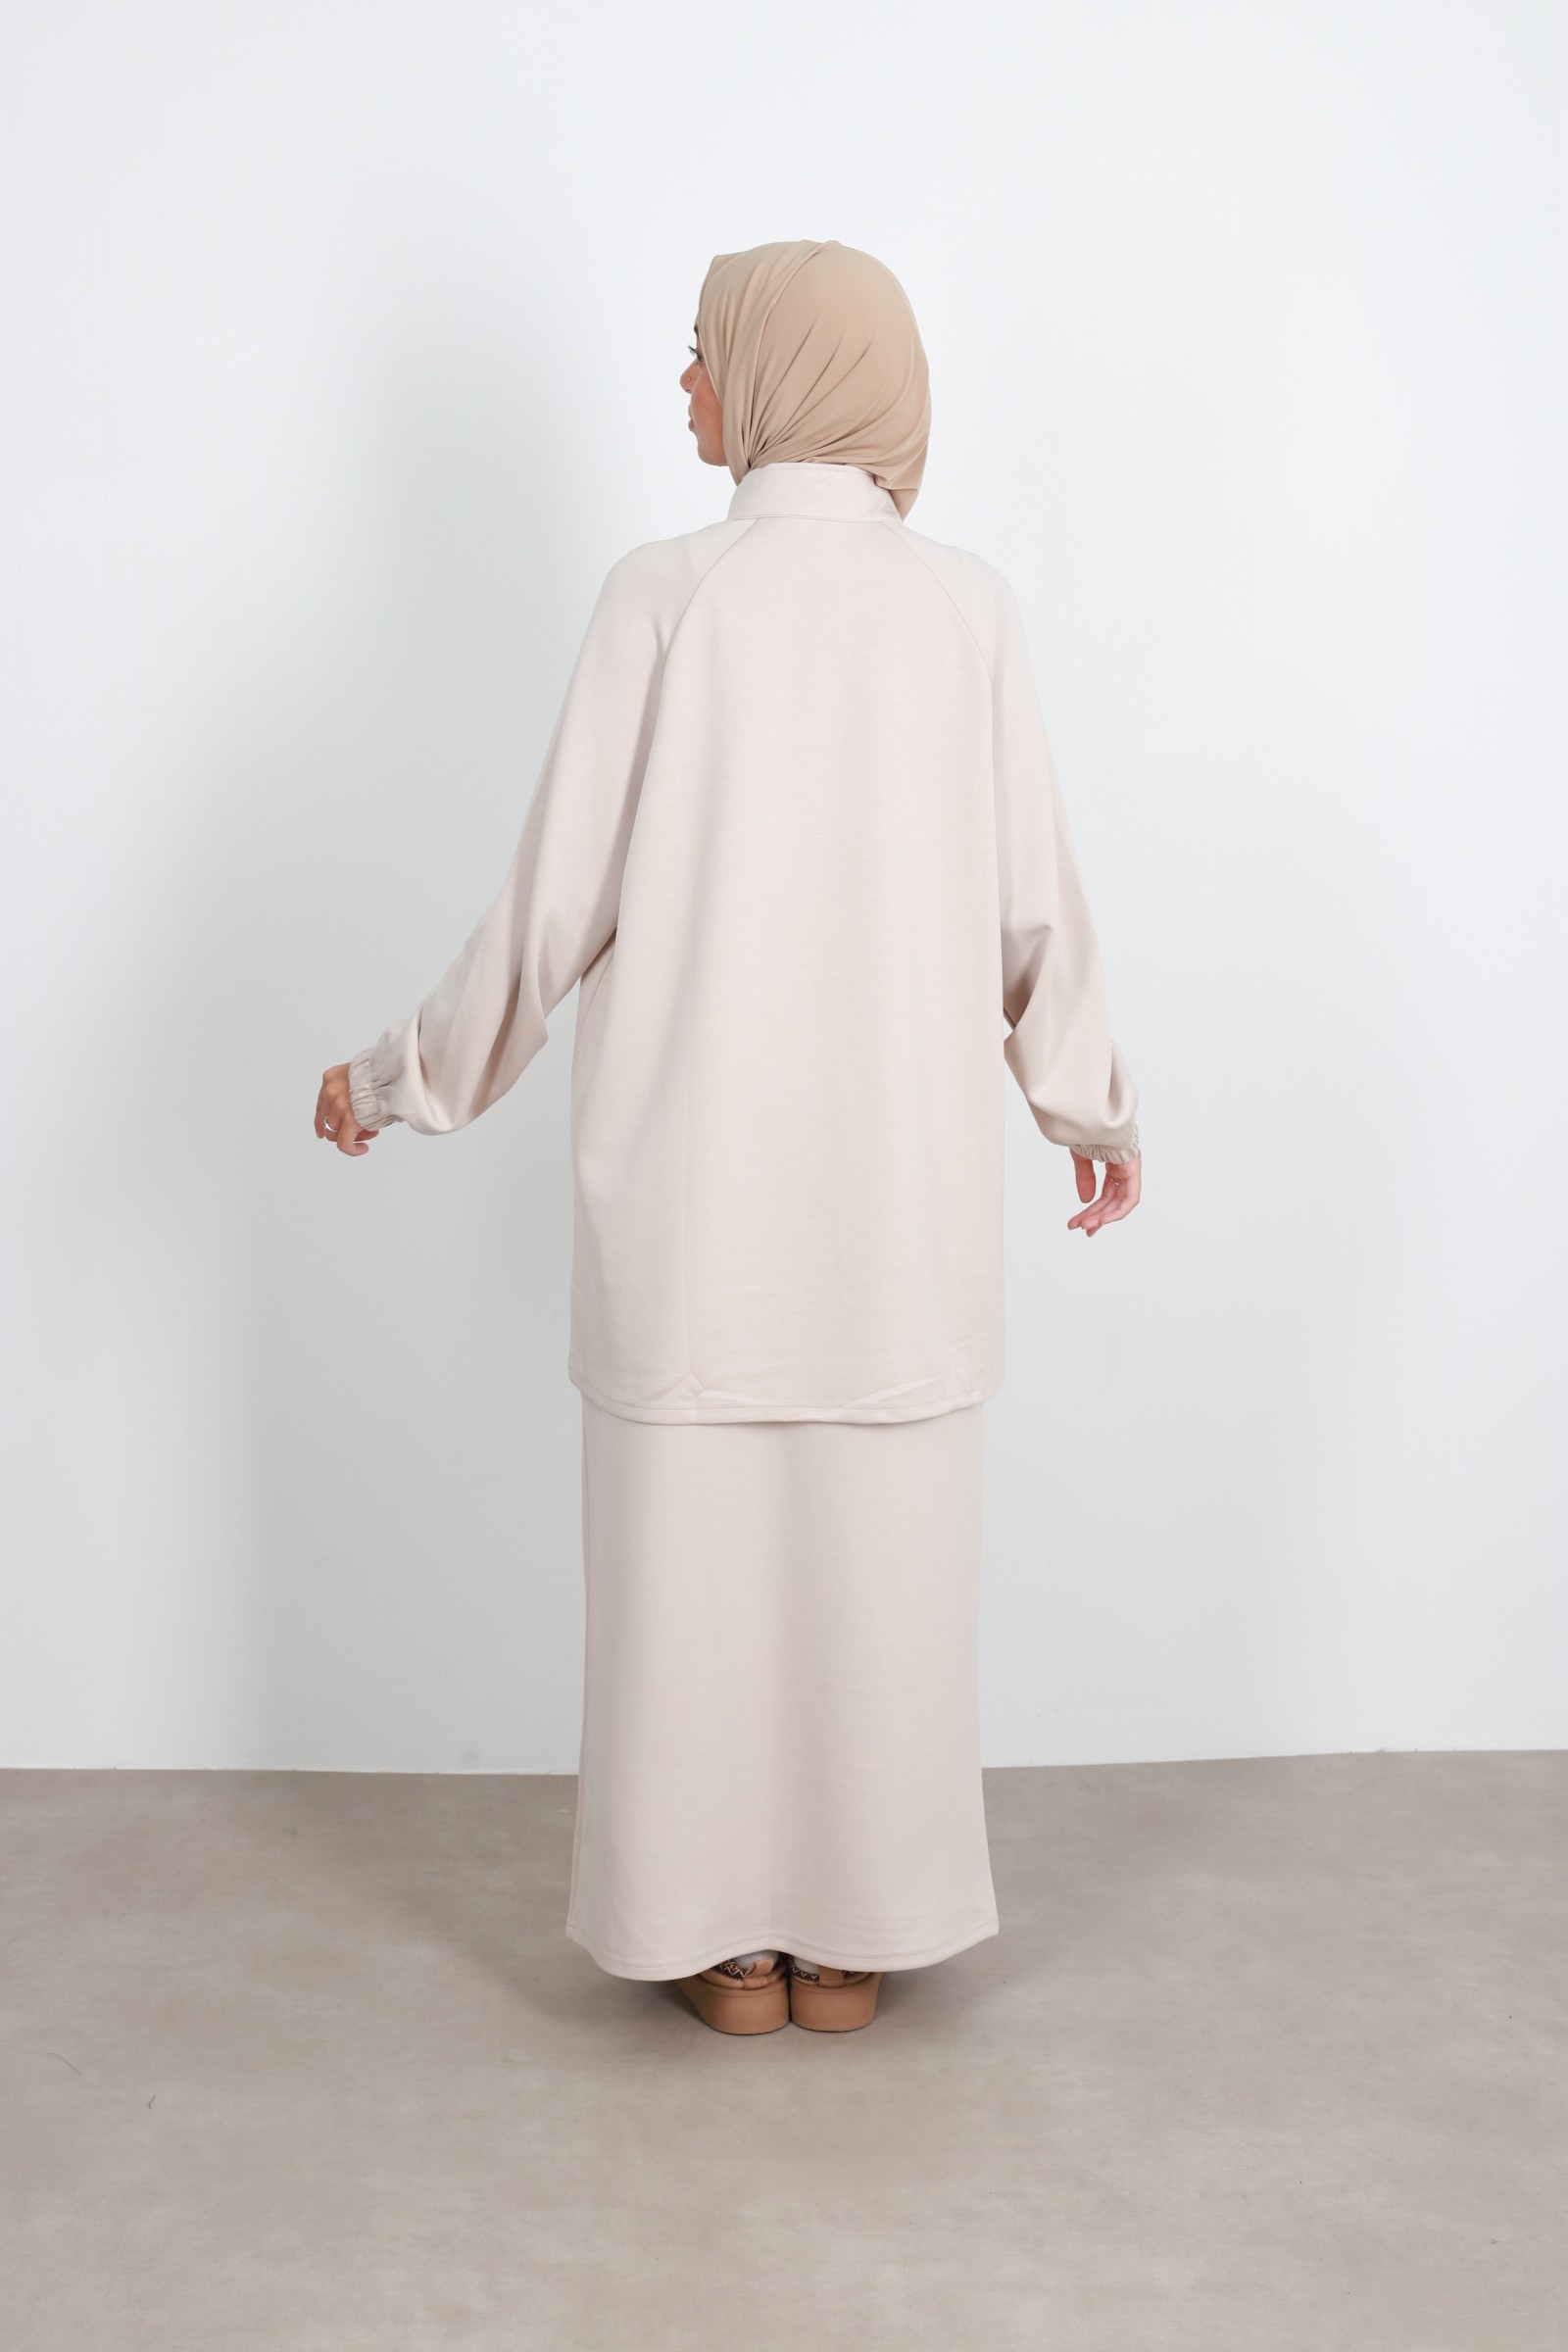 Set woman veiled skirt cream, hijeb woman 2023